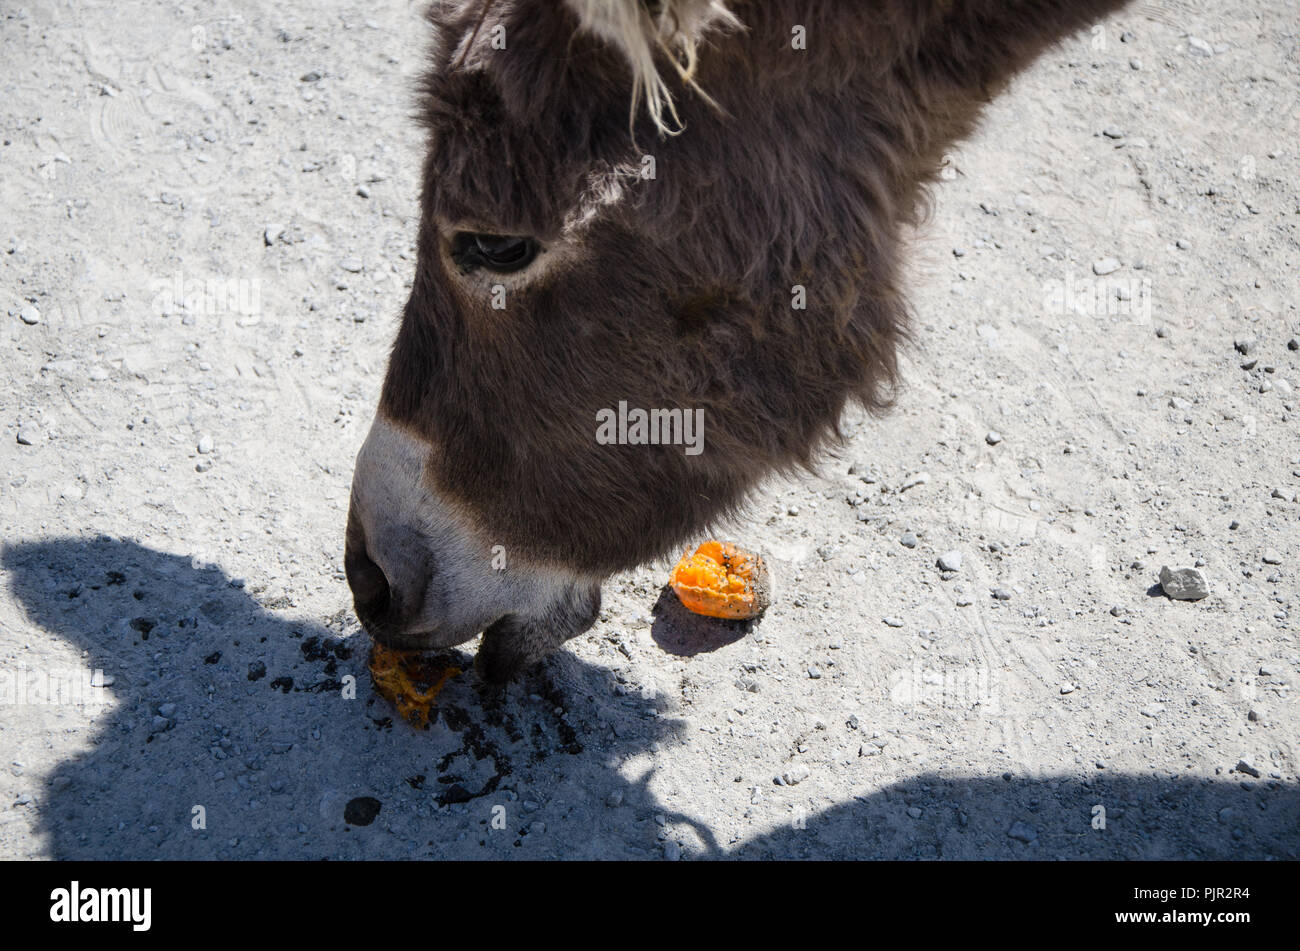 Curieux de l'alimentation de l'âne de mandarine. Close-up portrait photo. Banque D'Images